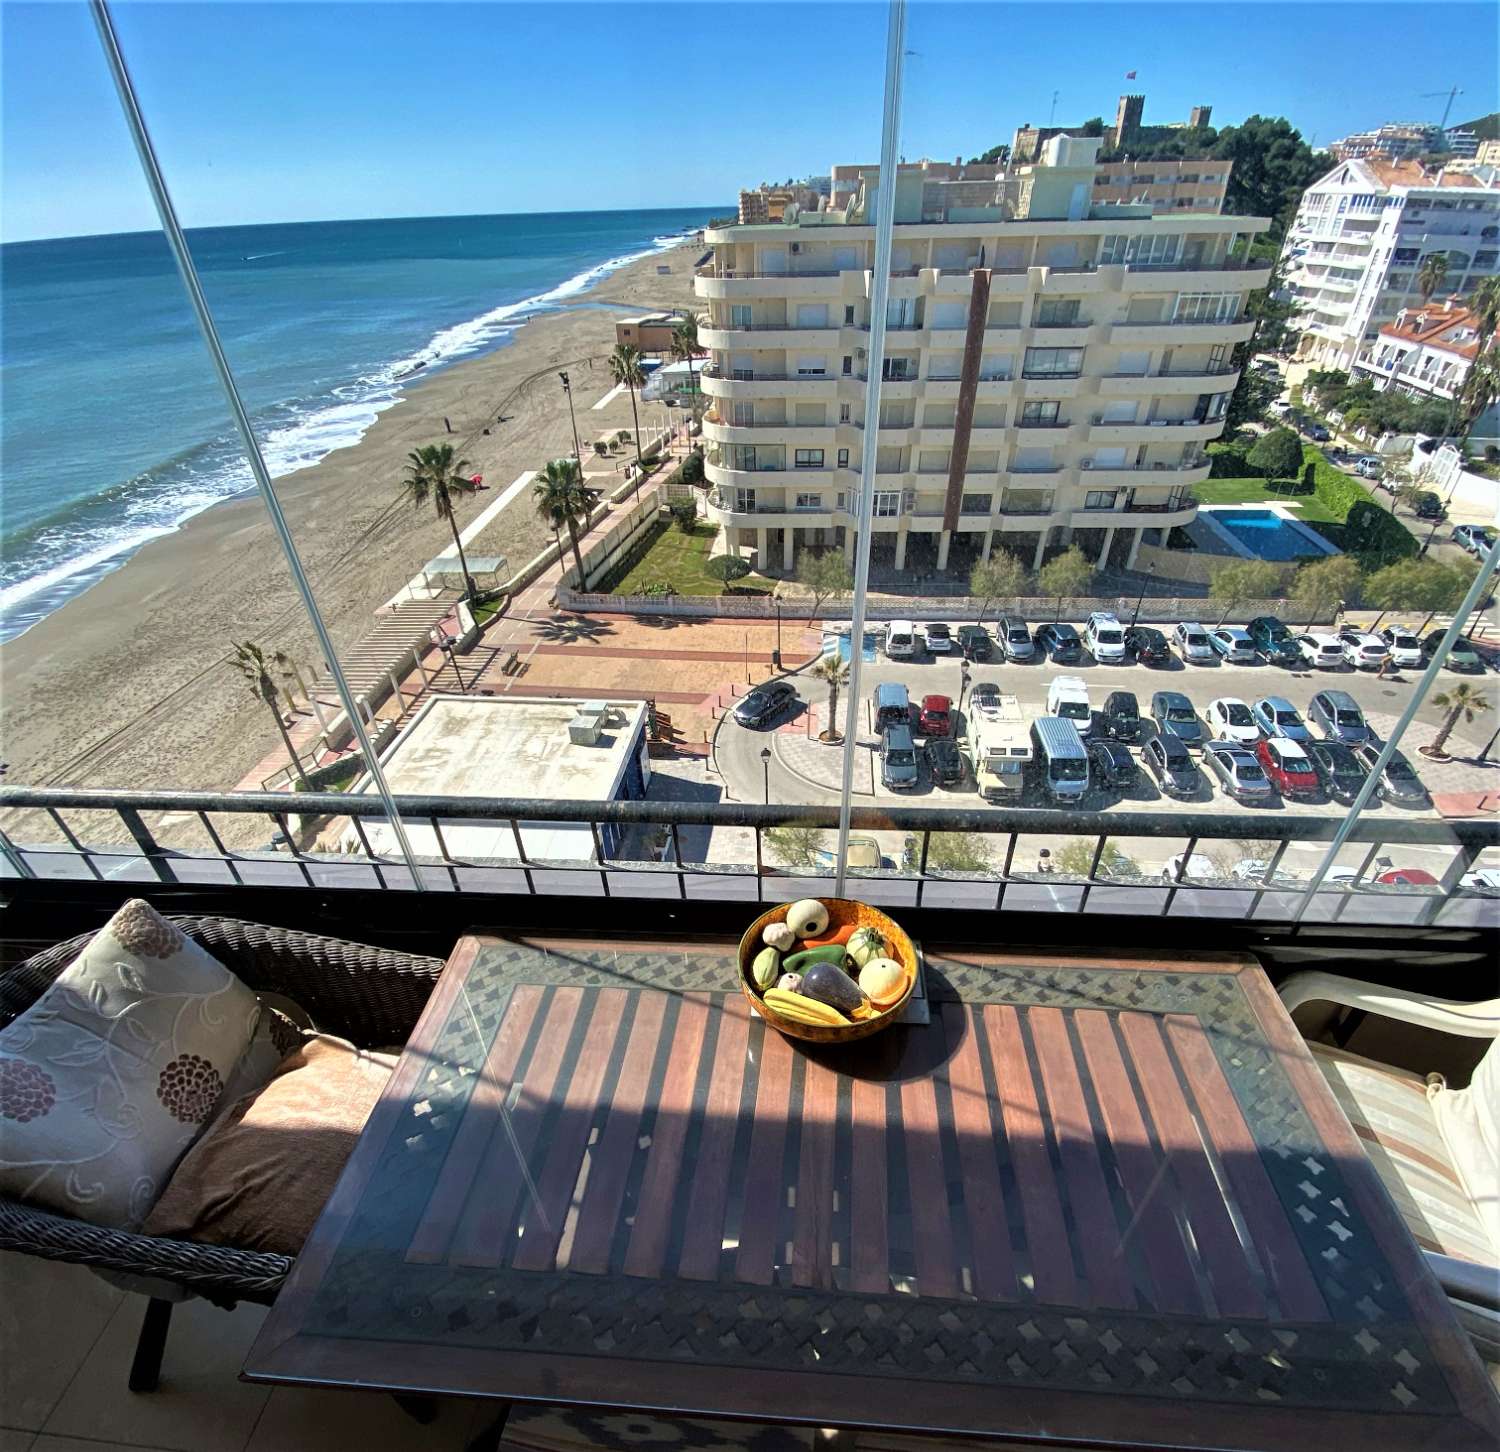 Fuengirola, 1 спальня, панорамный вид, бесплатный Wi-Fi, бассейн, первая линия пляжа.